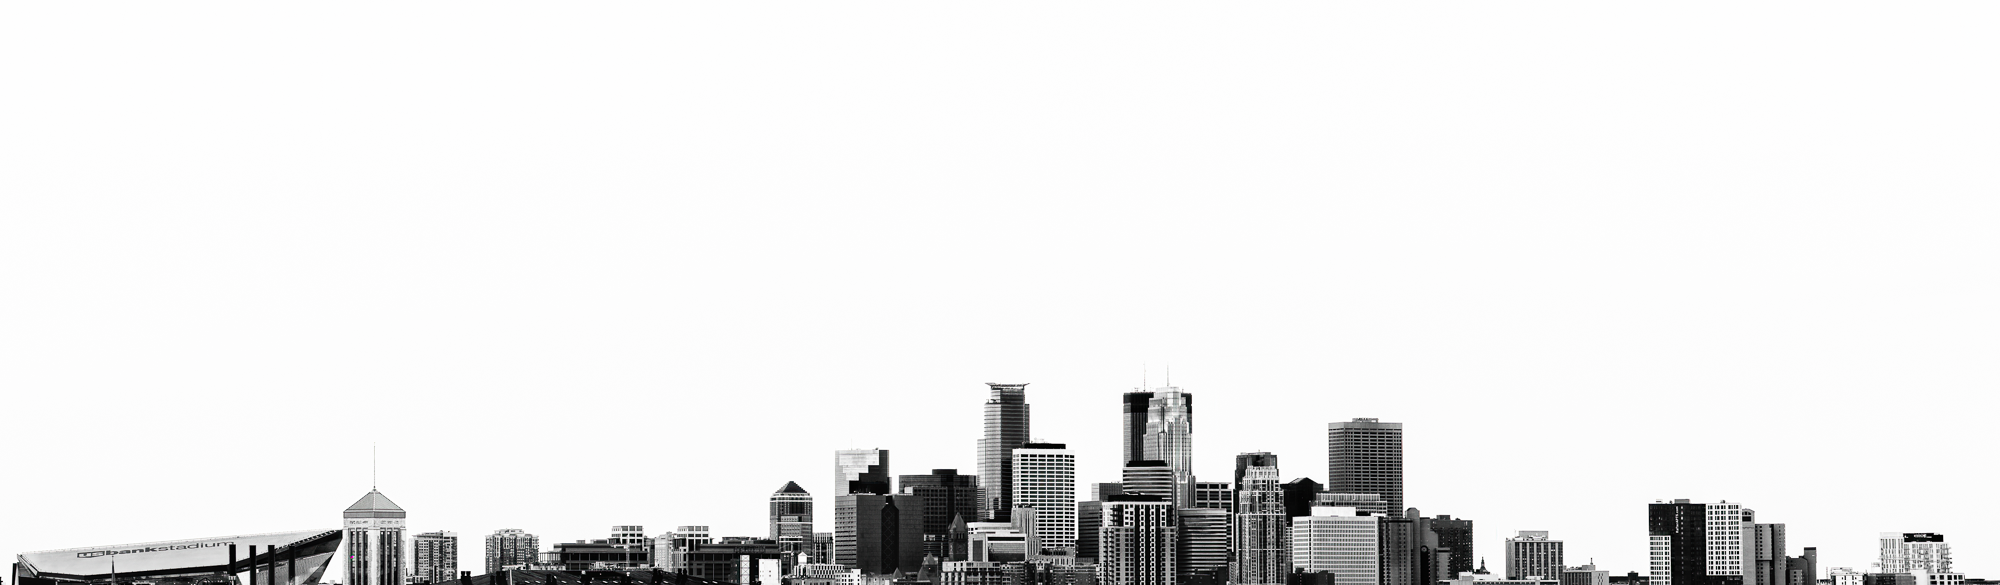 2020-07-04_Minneapolis.Skyline-Panorama.png